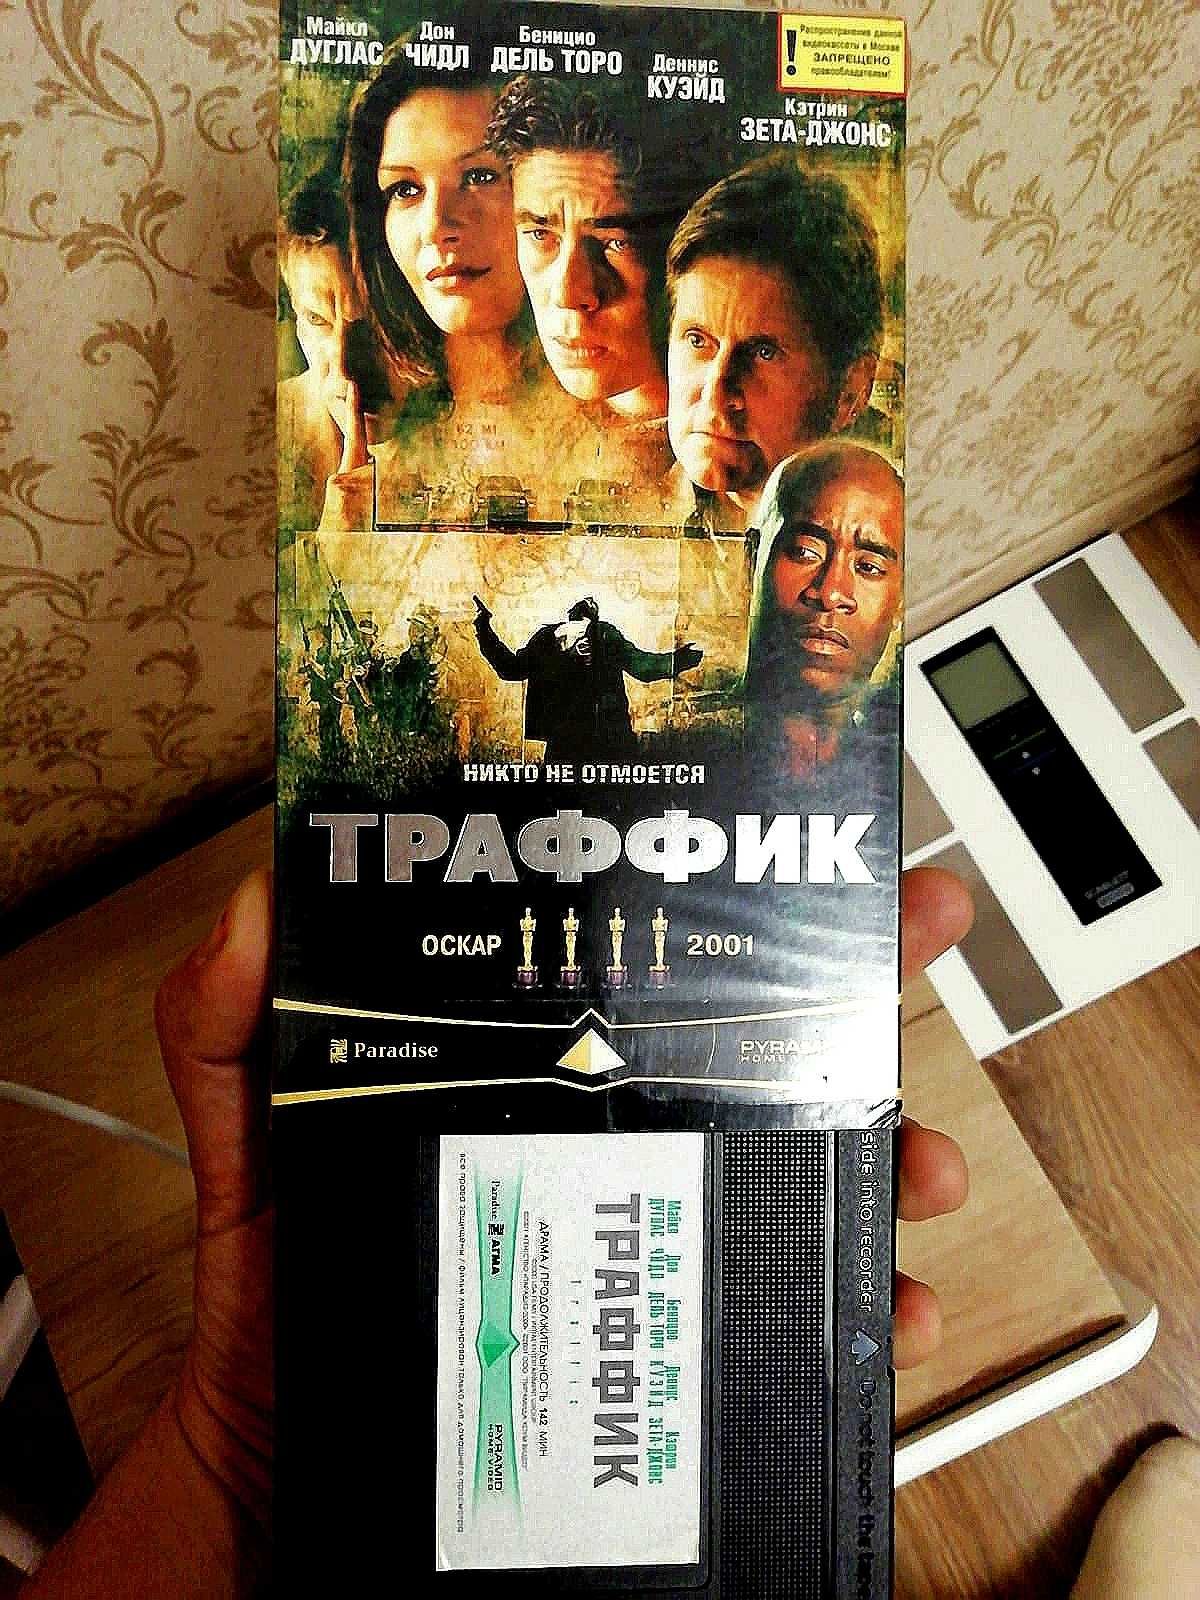 Продам Кинофильм "Траффик" на VHS.